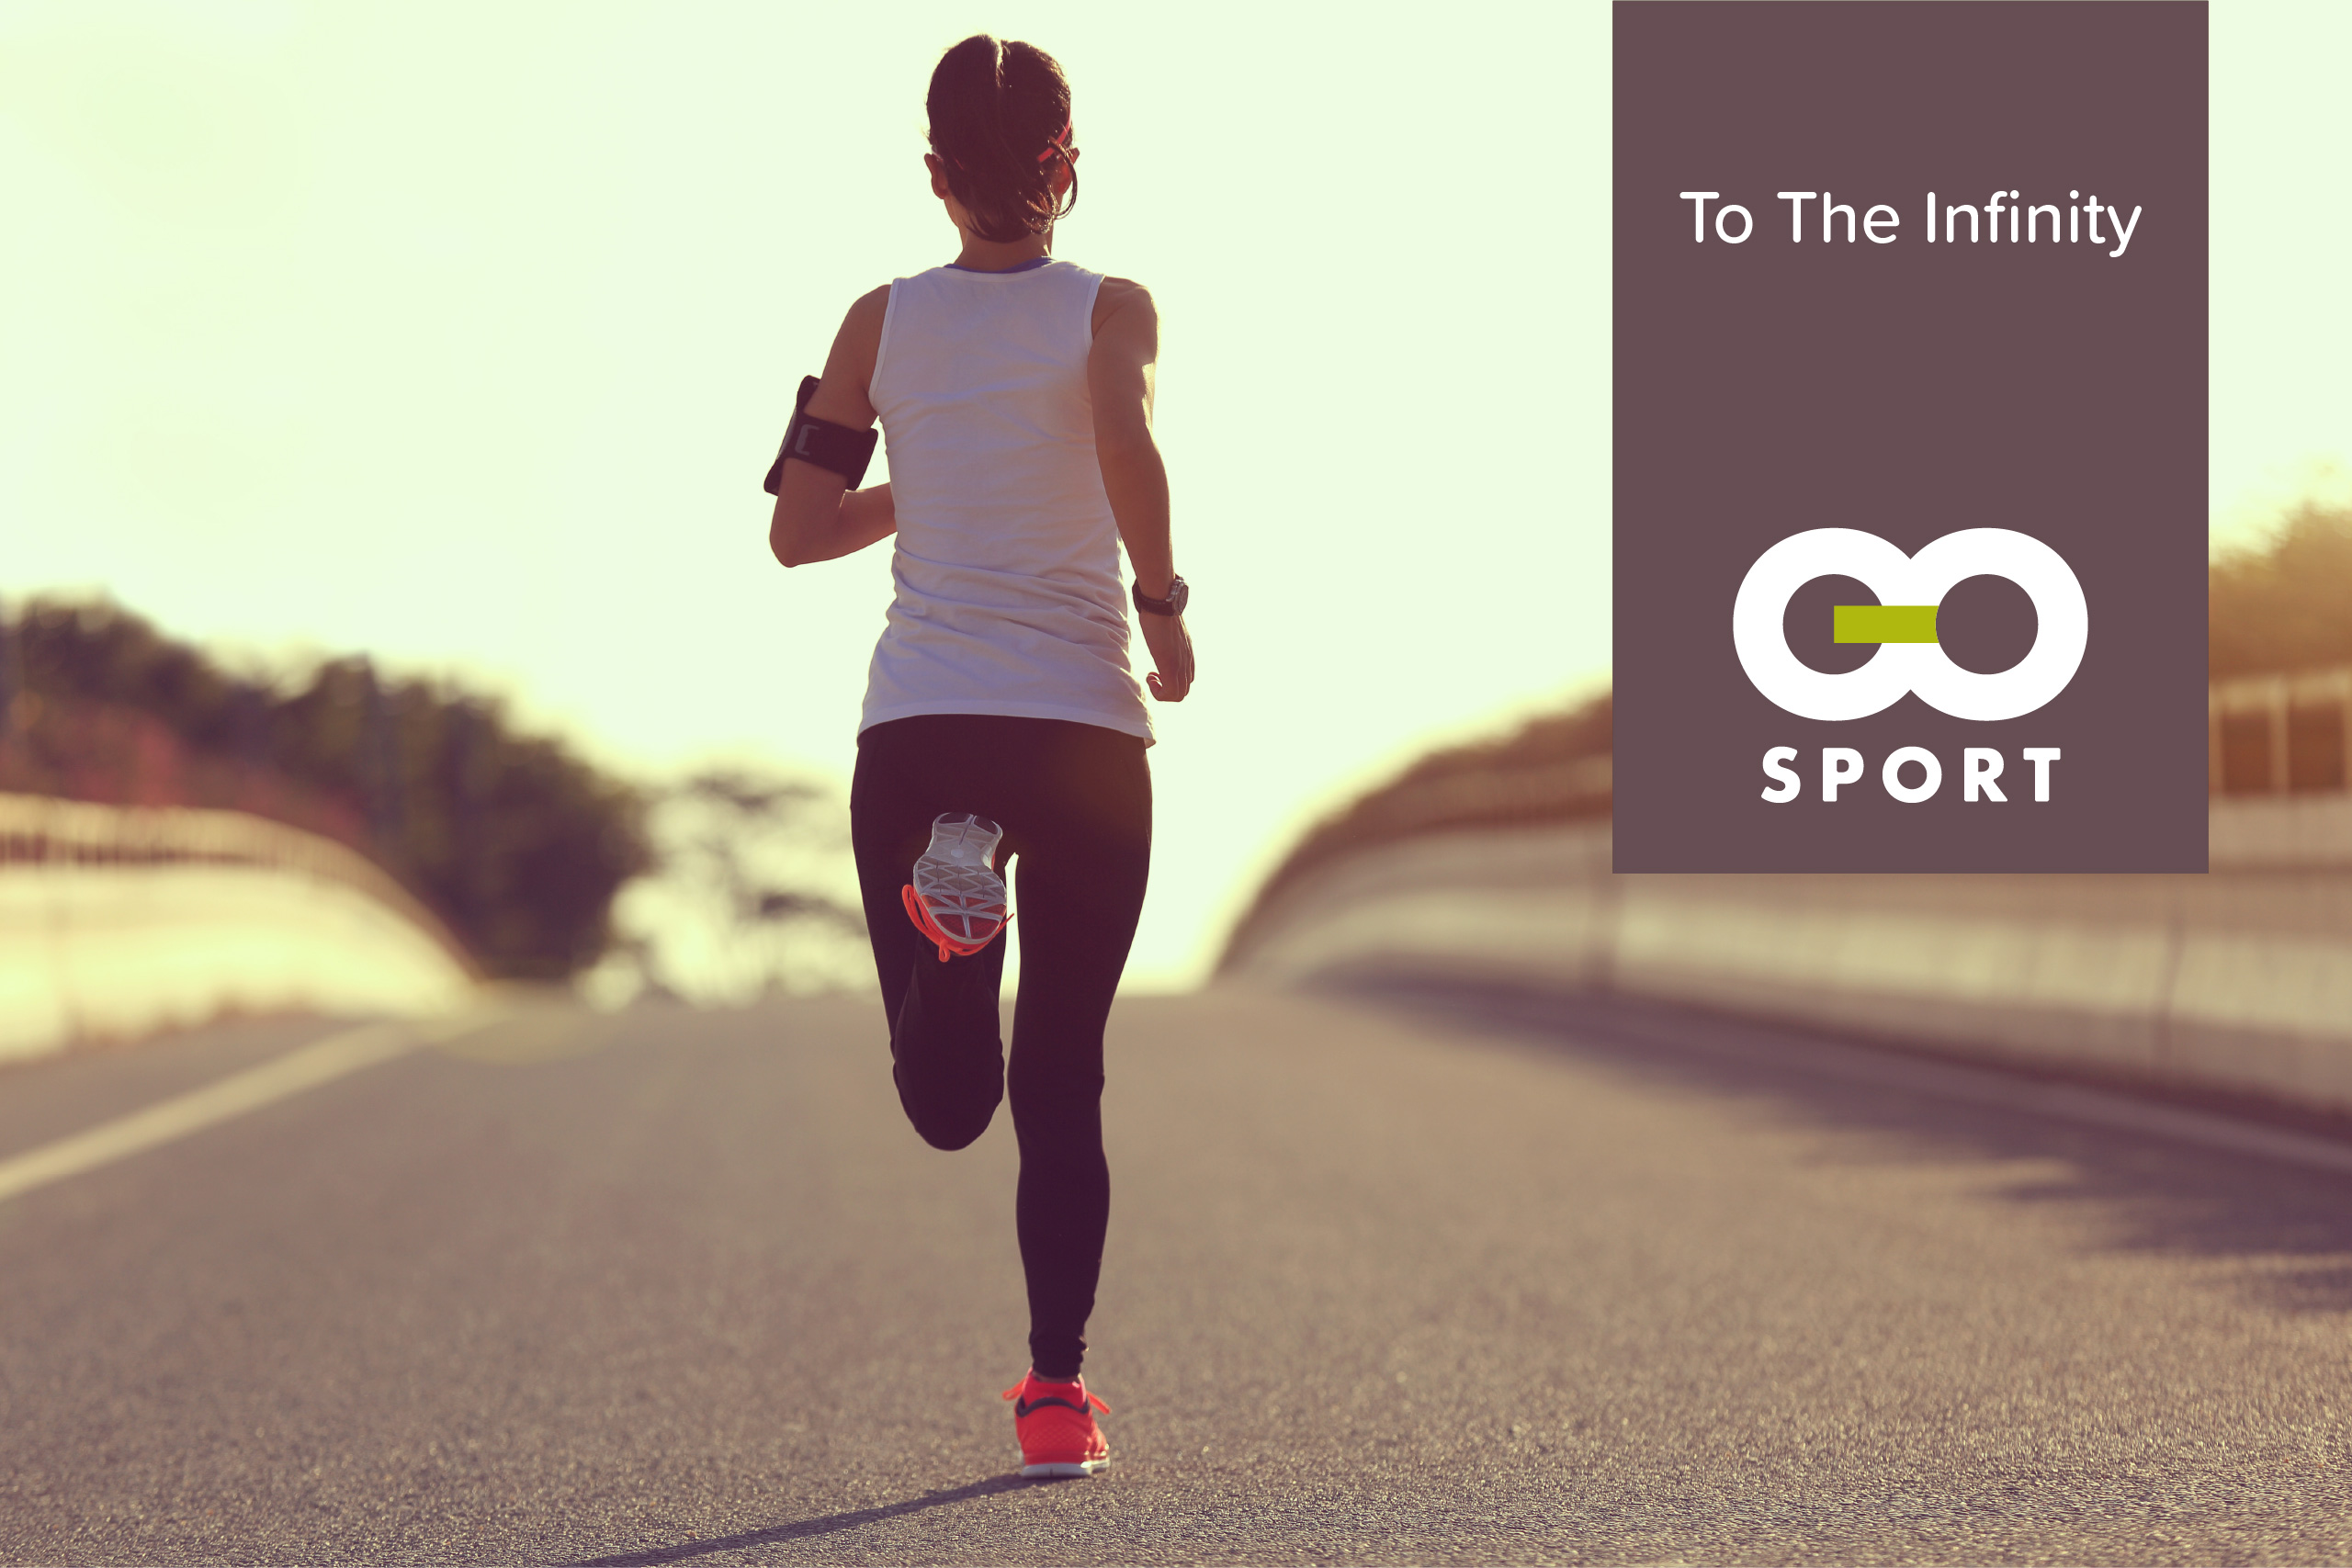 Get up go jogging. Go Sport спорт. Go Jogging. Go Jogging транскрипция. Go Sport приложение.